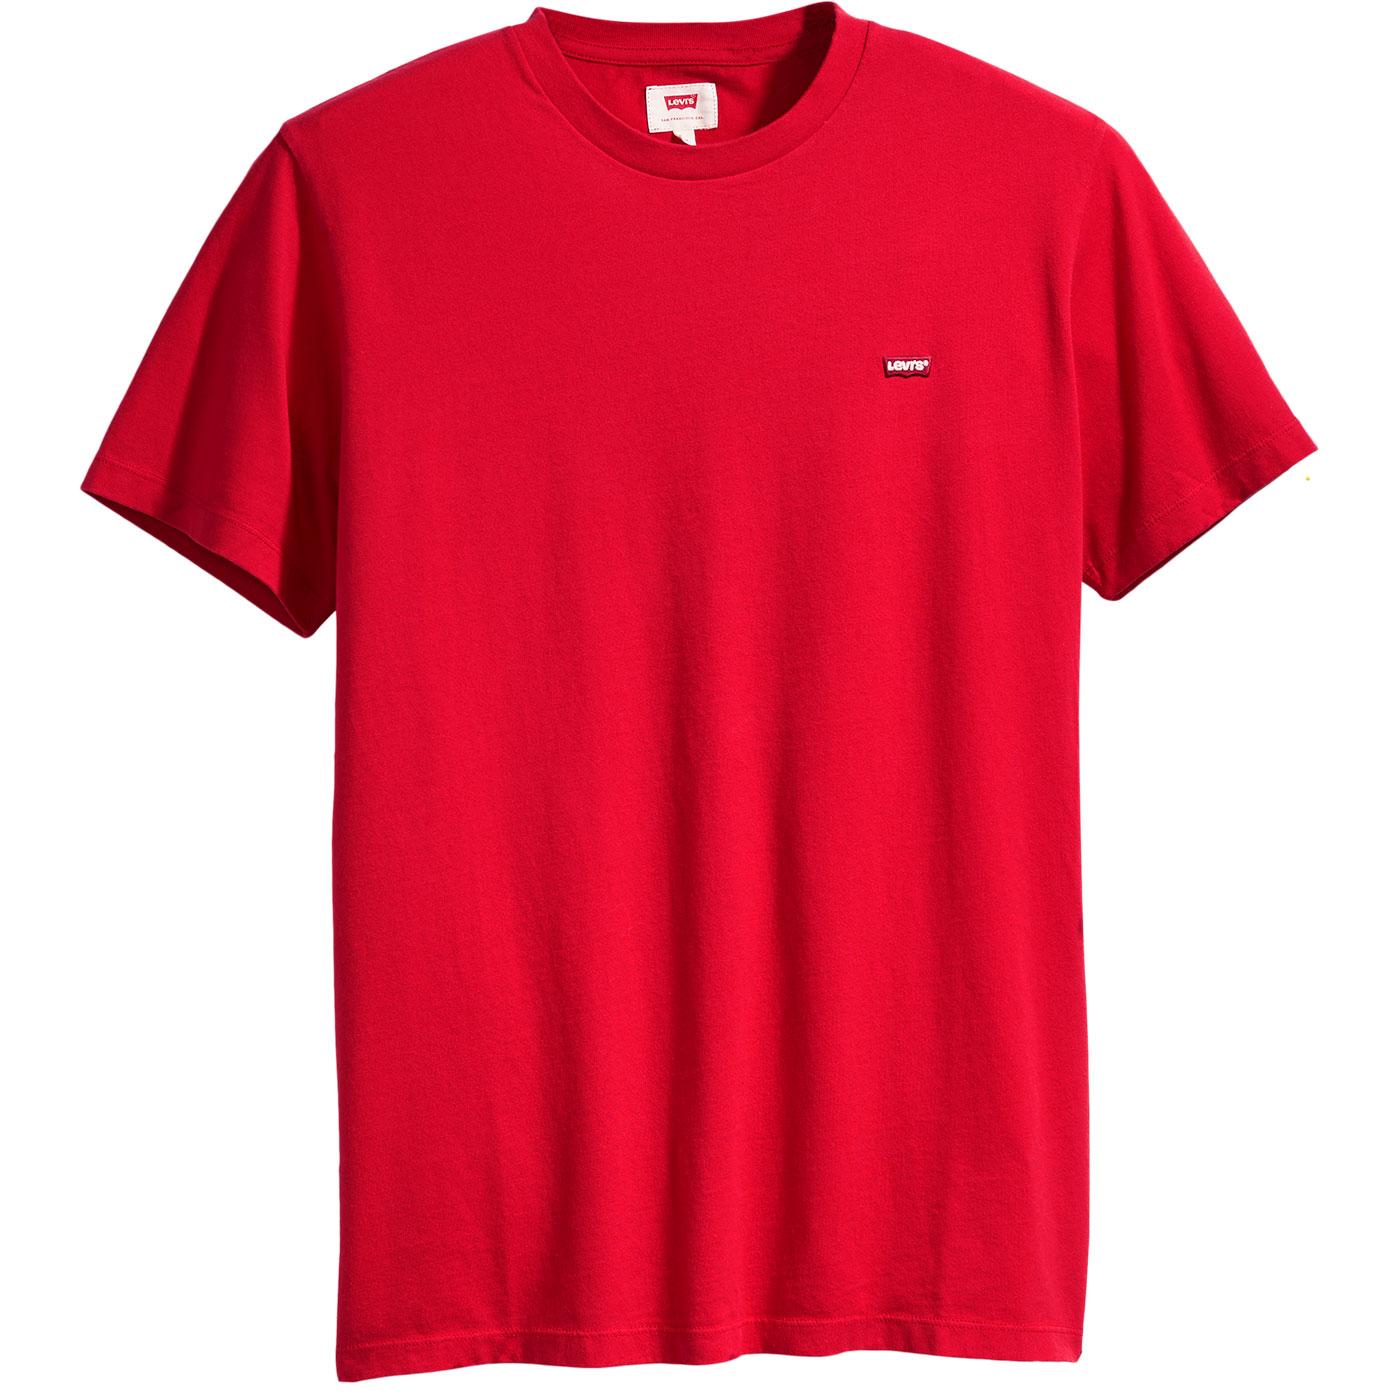 LEVI'S Original HM Small Logo Retro T-shirt in Brilliant Red